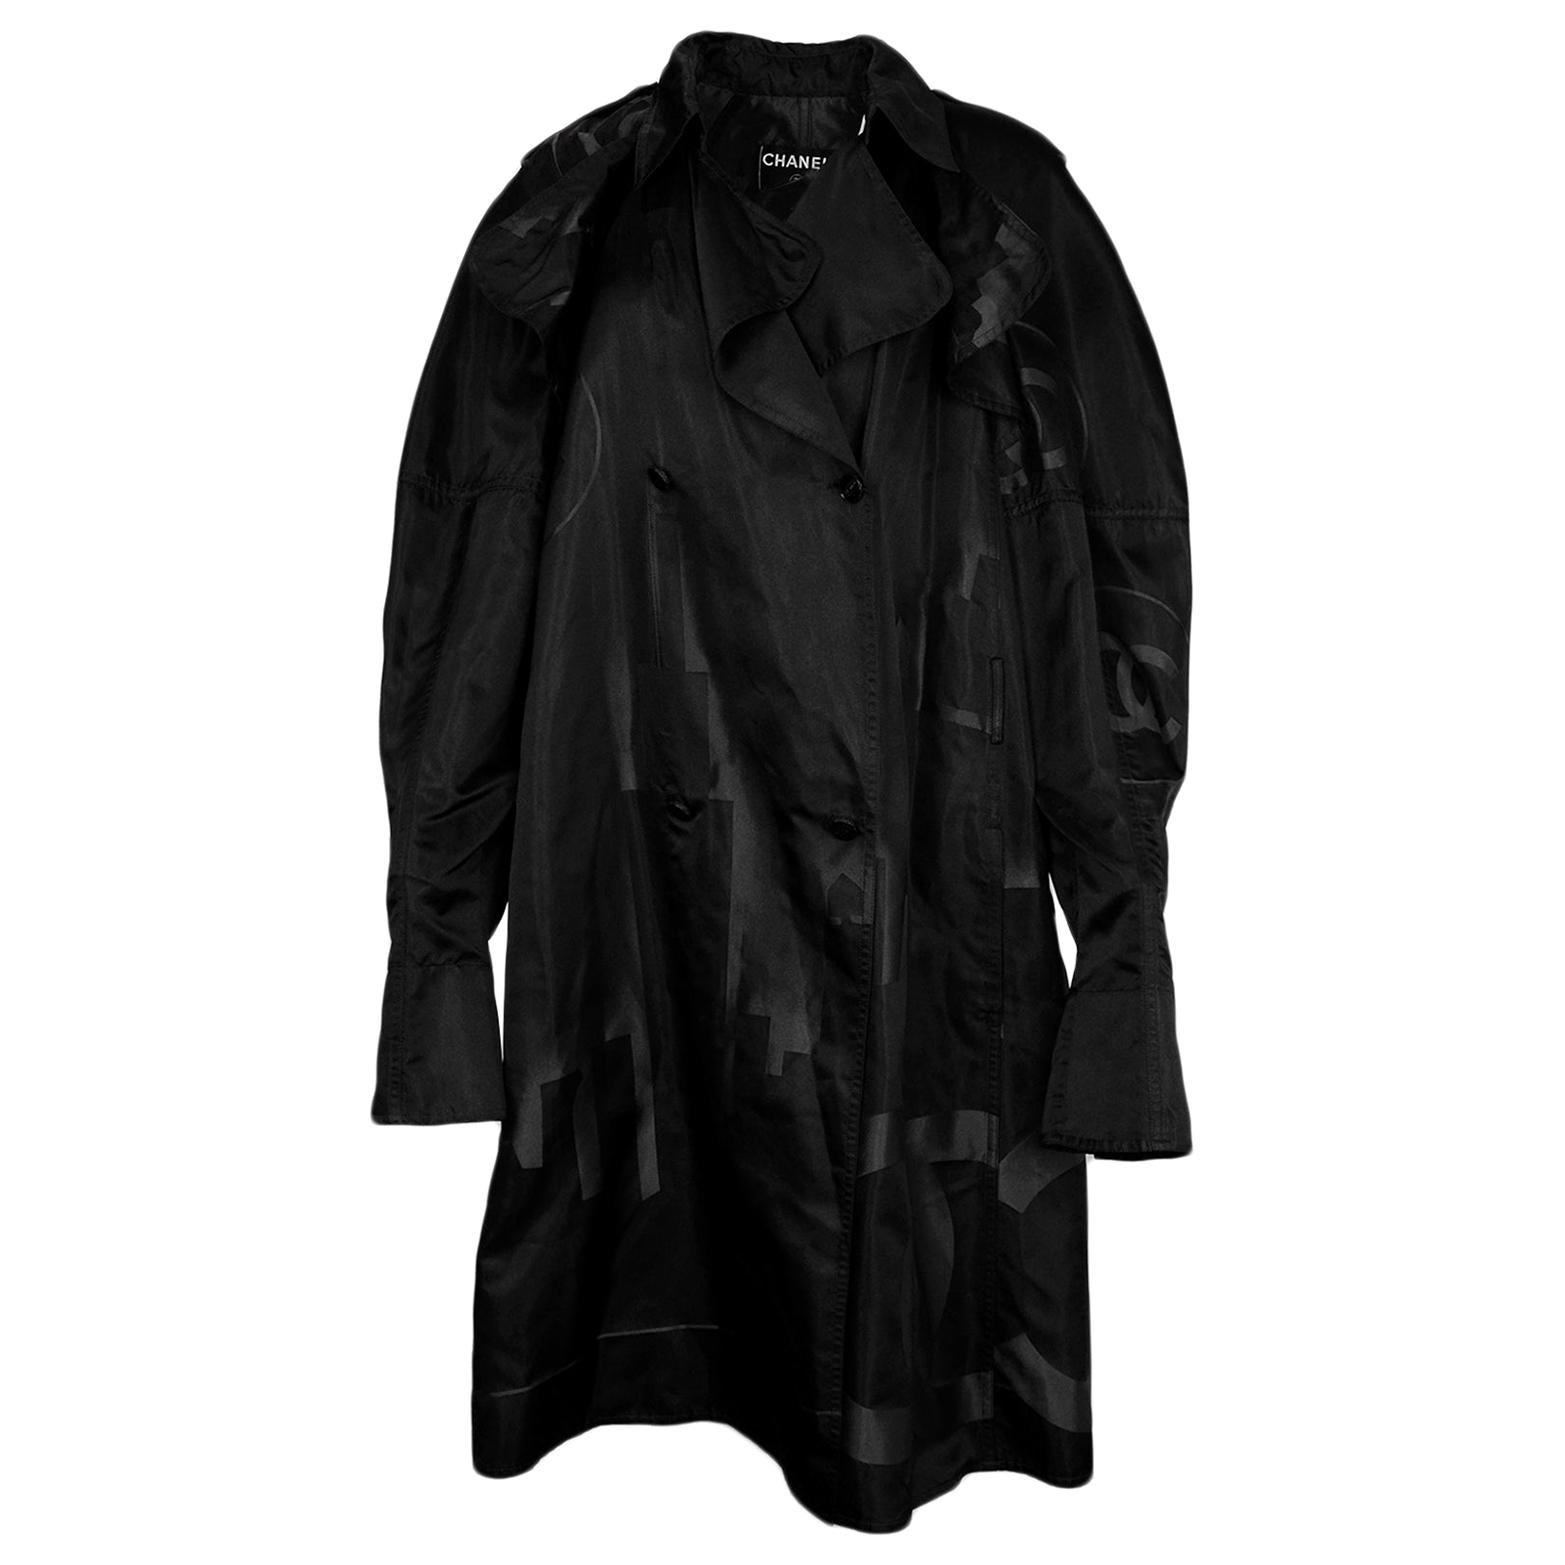 Chanel Black Silk Trench Coat w/ CC Cityscape Design sz 46